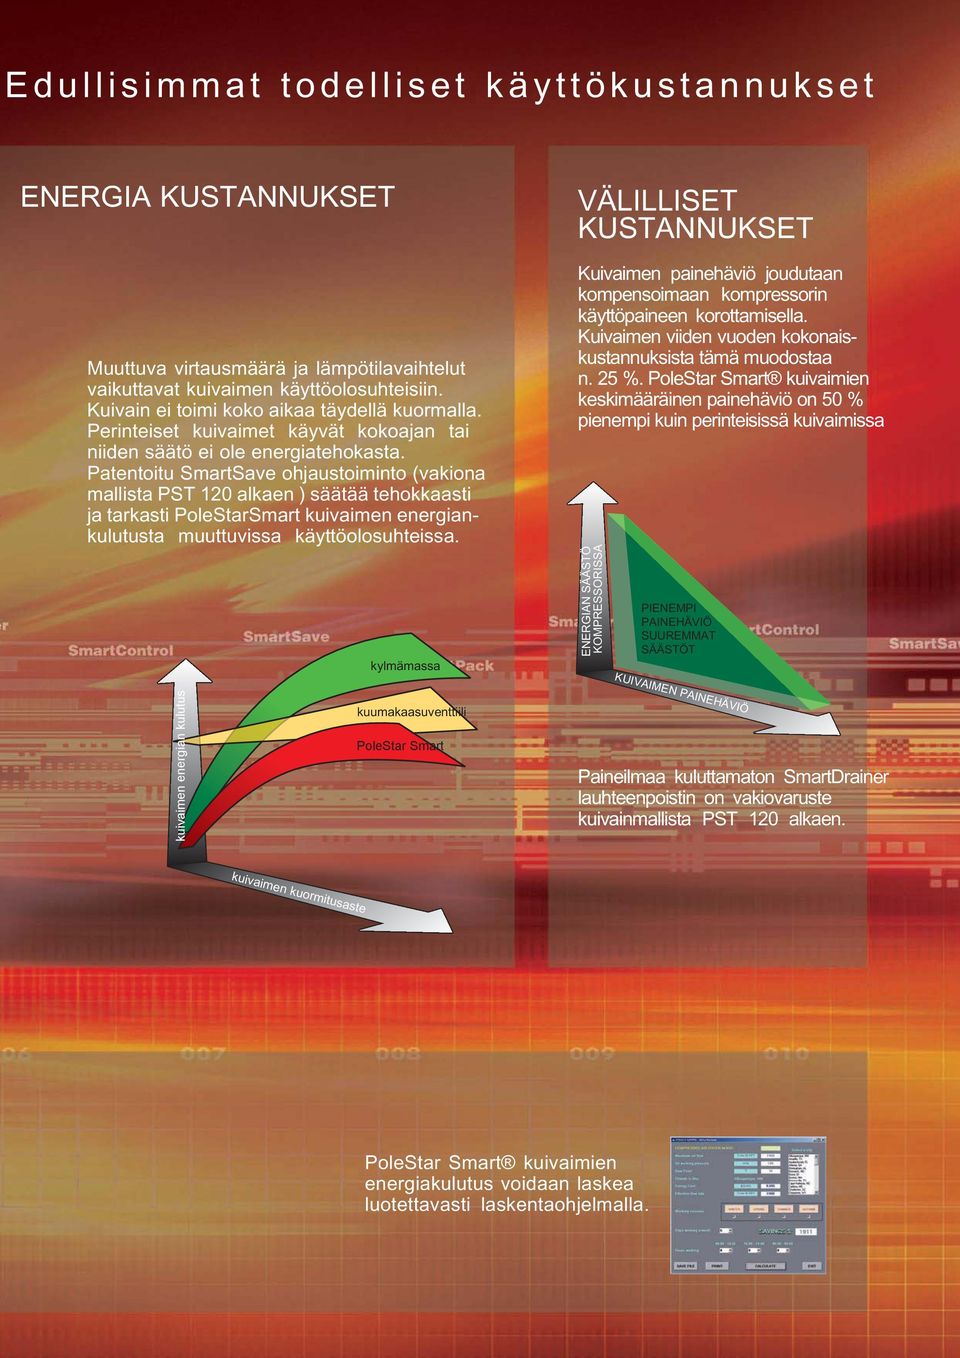 Patentoitu SmartSave ohjaustoiminto (vakiona mallista PST 120 alkaen ) säätää tehokkaasti ja tarkasti PoleStarSmart kuivaimen energiankulutusta muuttuvissa käyttöolosuhteissa.